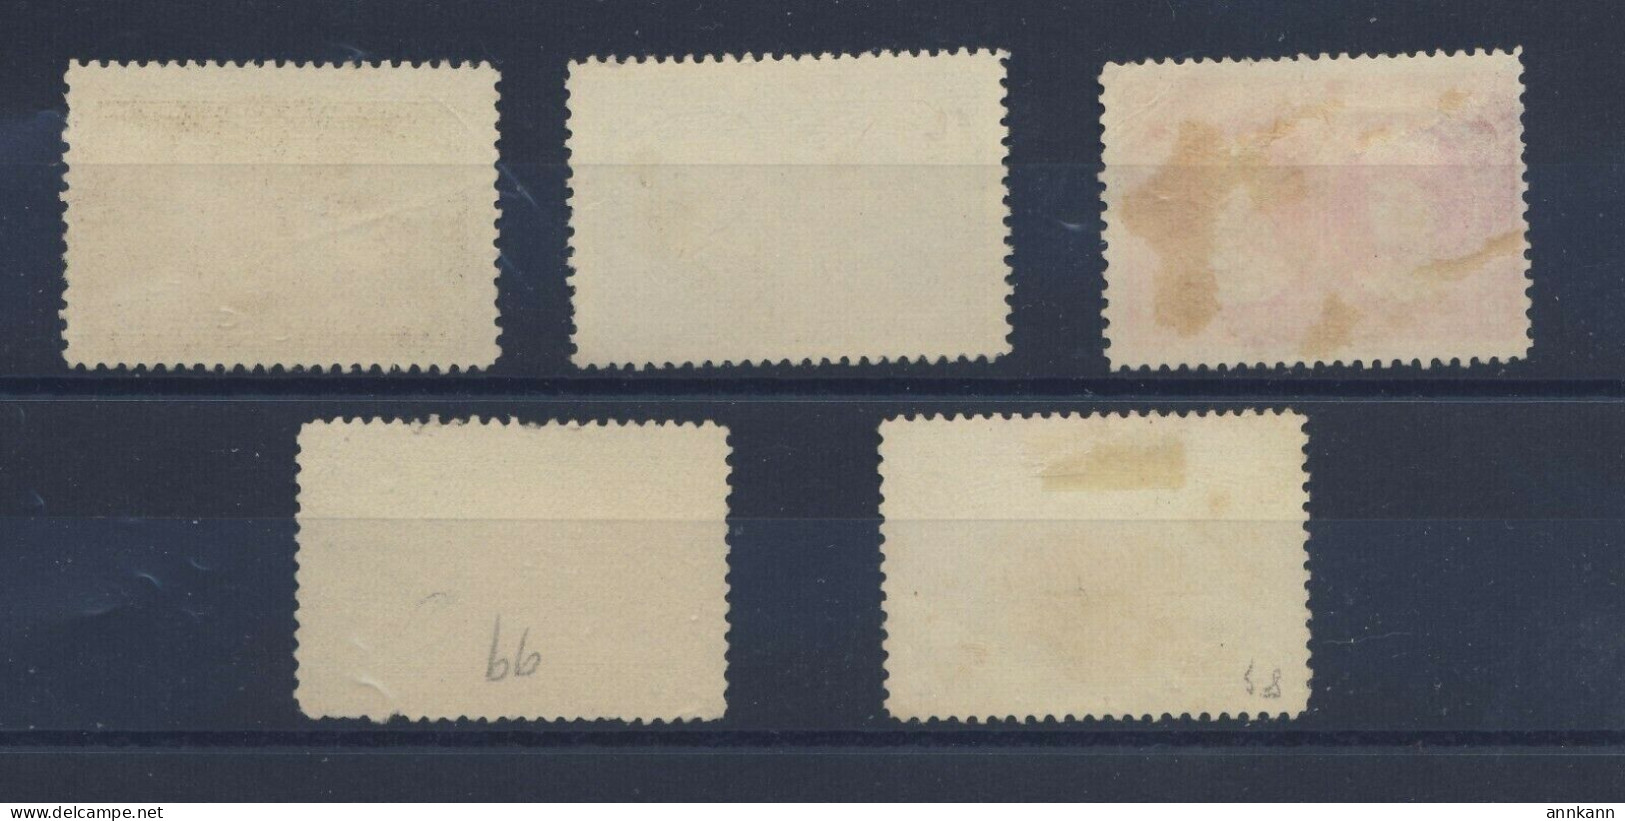 5x Canada 1908 Quebec Used Fine Stamps 1/2c 1c 2c 3c 5c 7c Guide Value = $95.00 - Usati